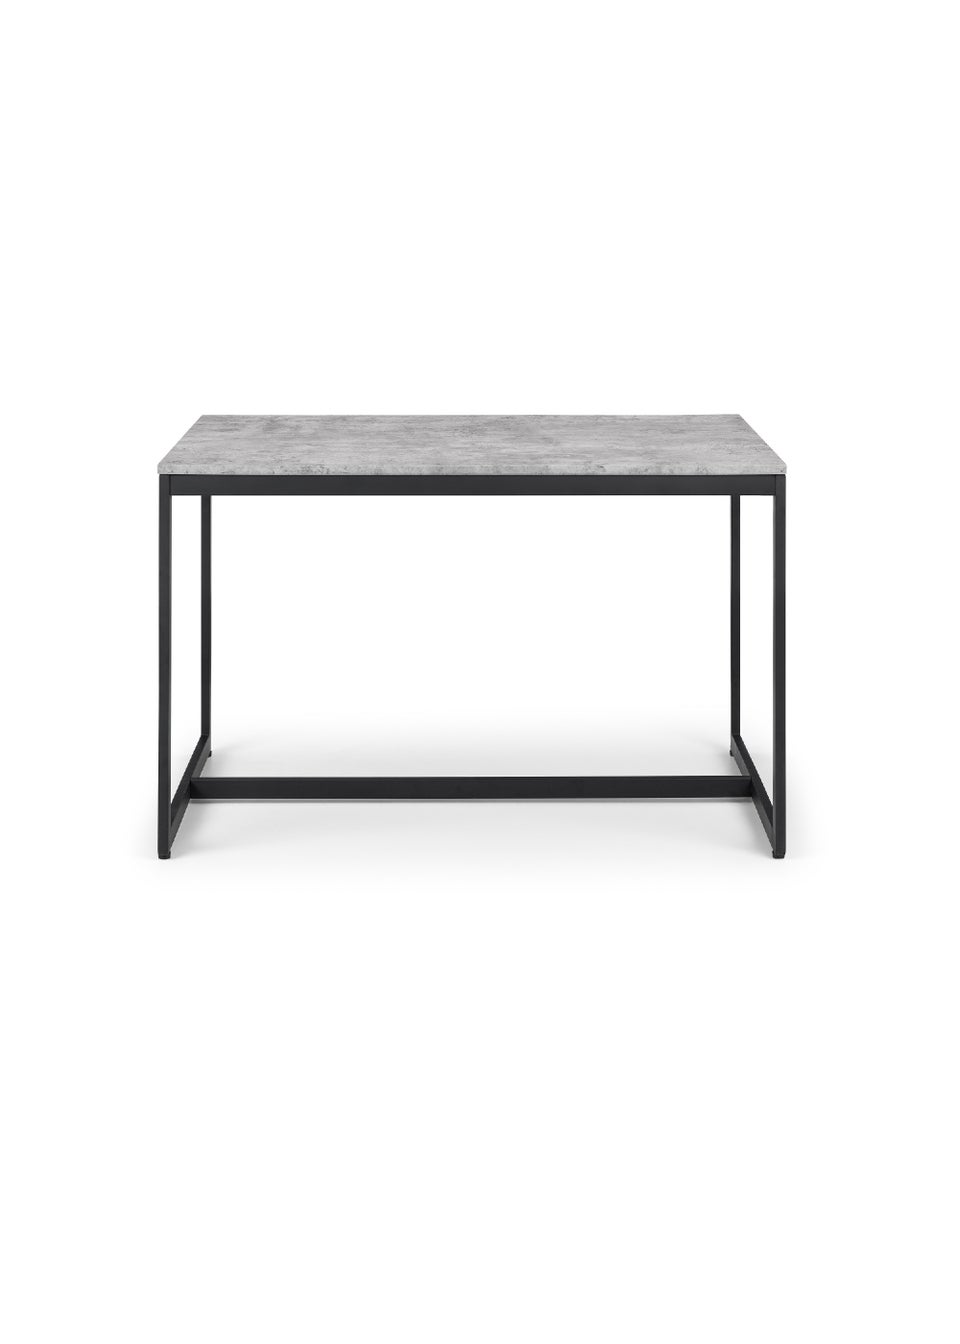 Julian Bowen Staten Concrete Dining Table (75 x 120 x 80 cm)